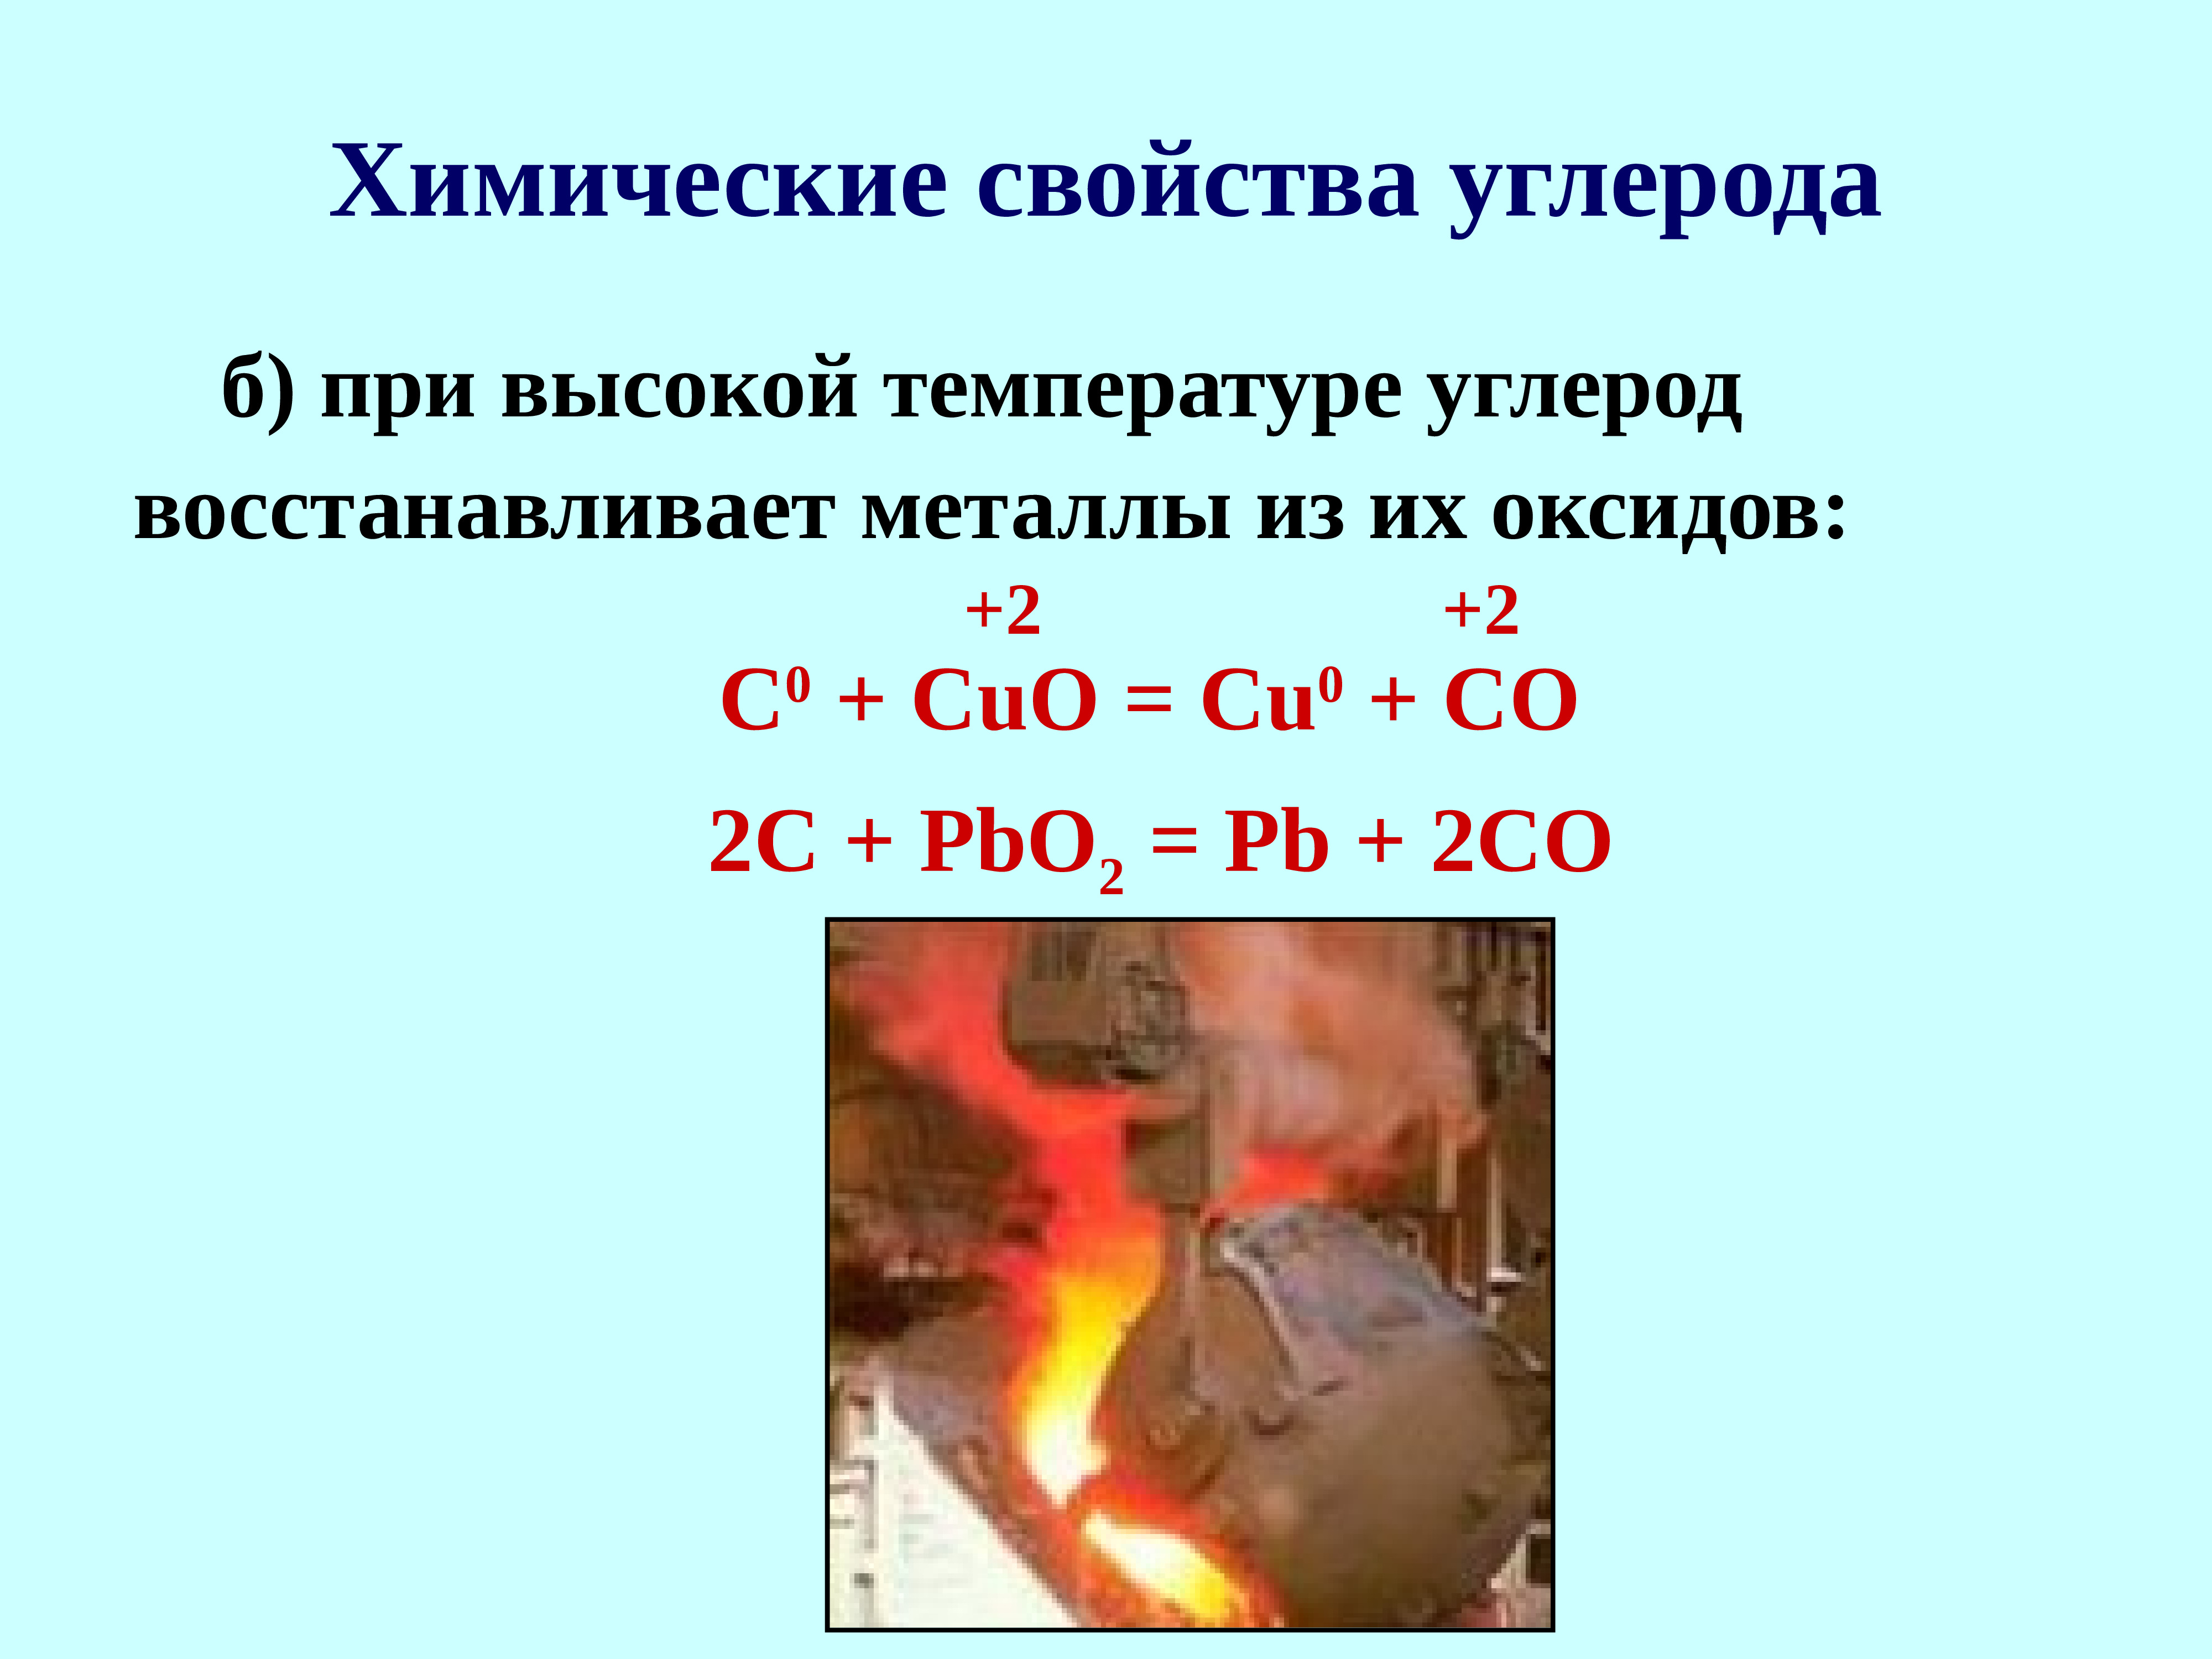 Восстановление металлов из оксидов водородом. Восстановление углеродом металлов из их оксидов. Восстановление металлов углеродом. Углерод восстанавливает металлы из оксидов.